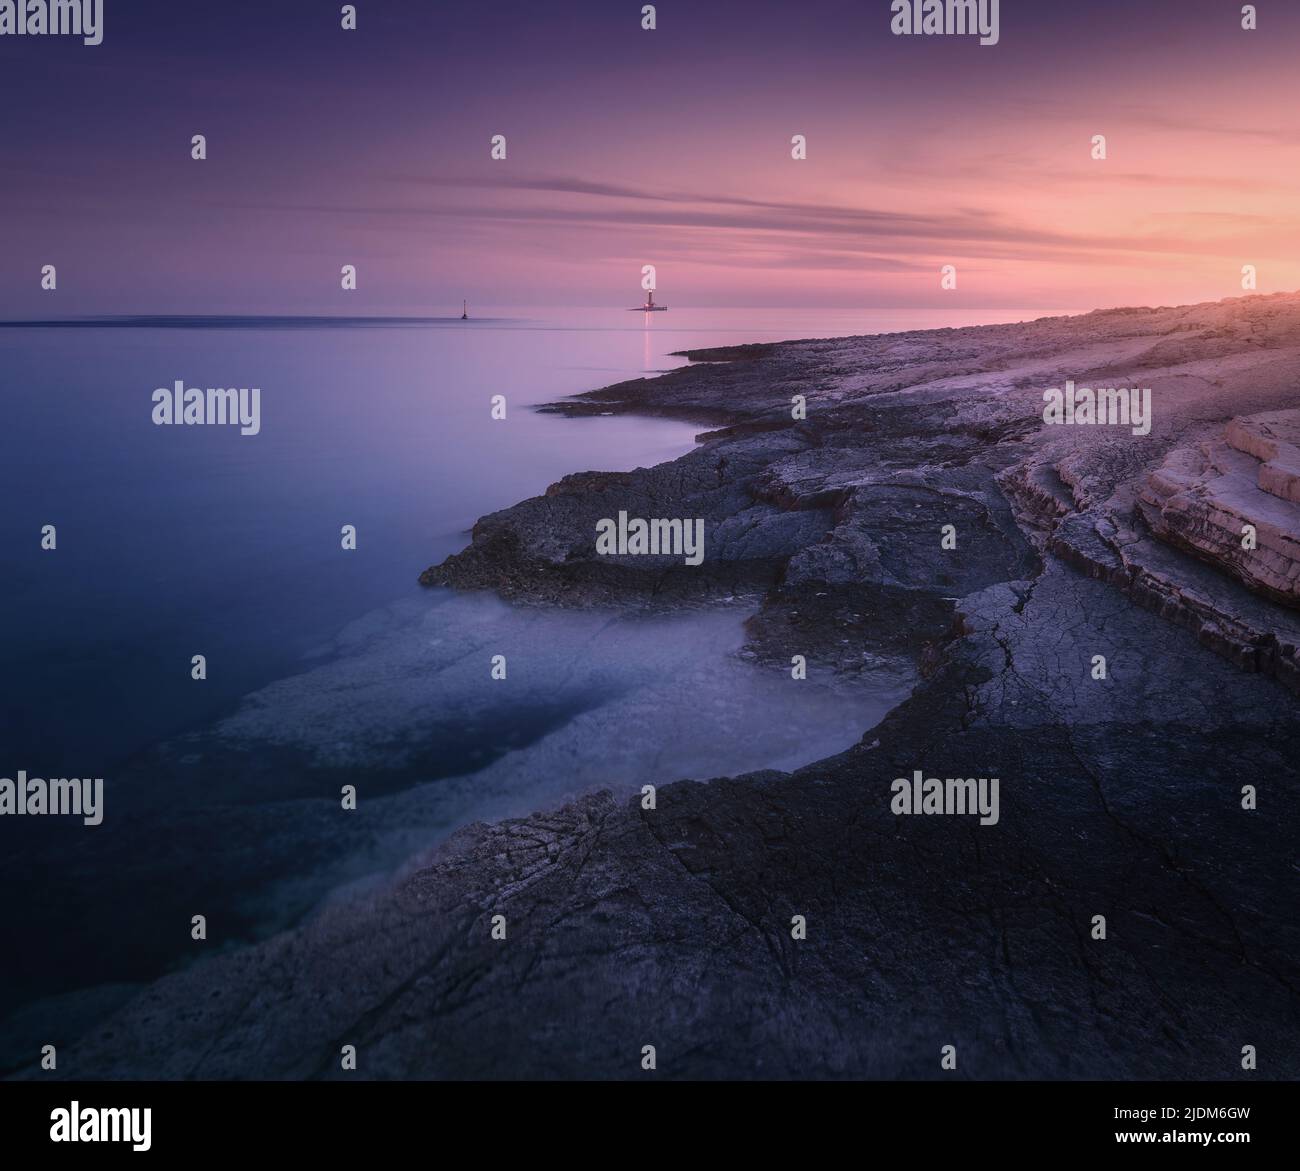 La costa rocosa del mar y el faro a la colorida puesta de sol en verano Foto de stock